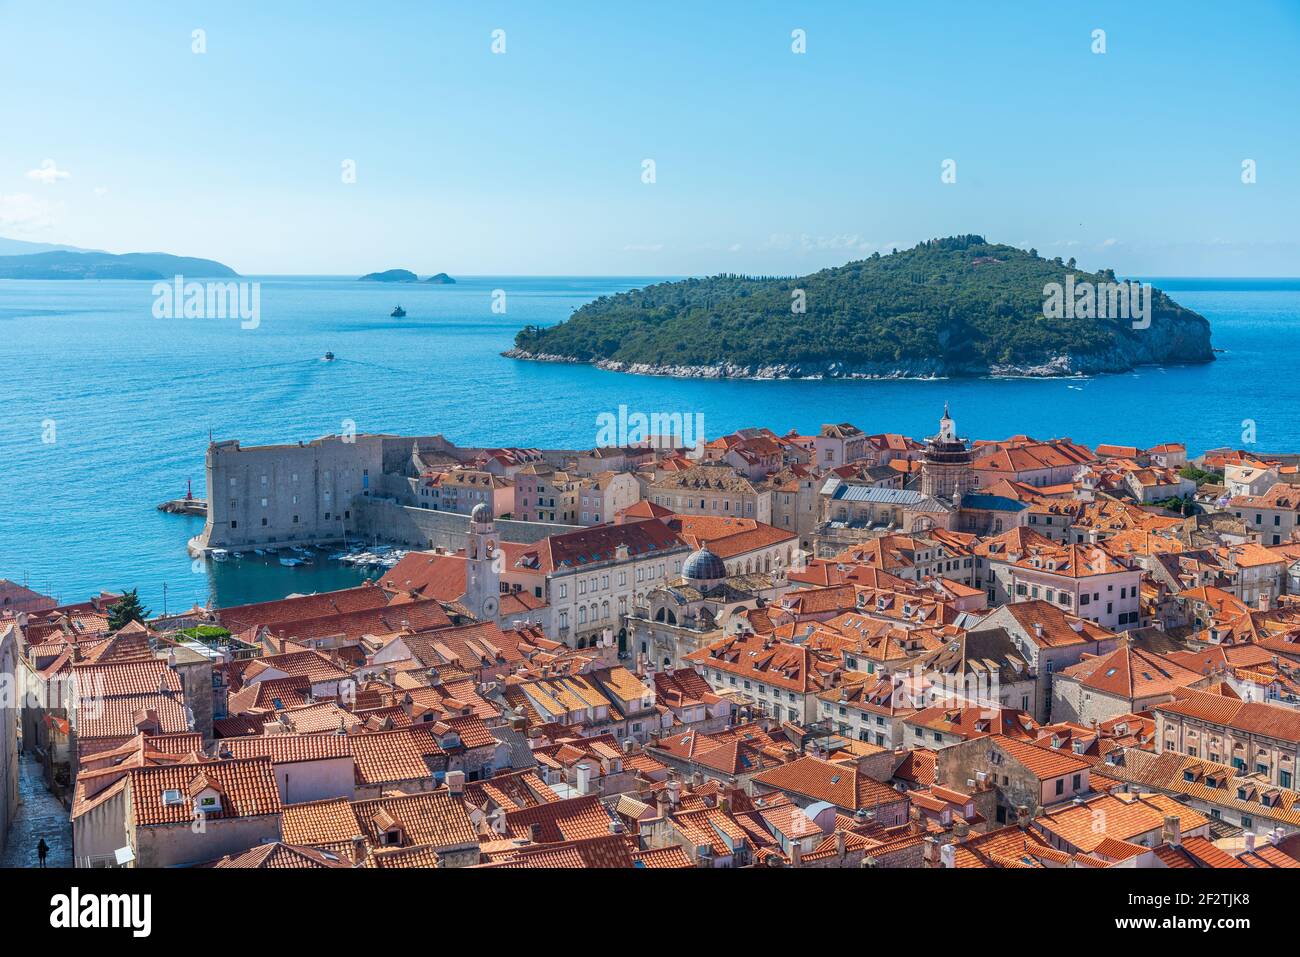 Vue aérienne des toits rouges de la vieille ville de Dubrovnik et de l'île de Lokrum, Croatie Banque D'Images